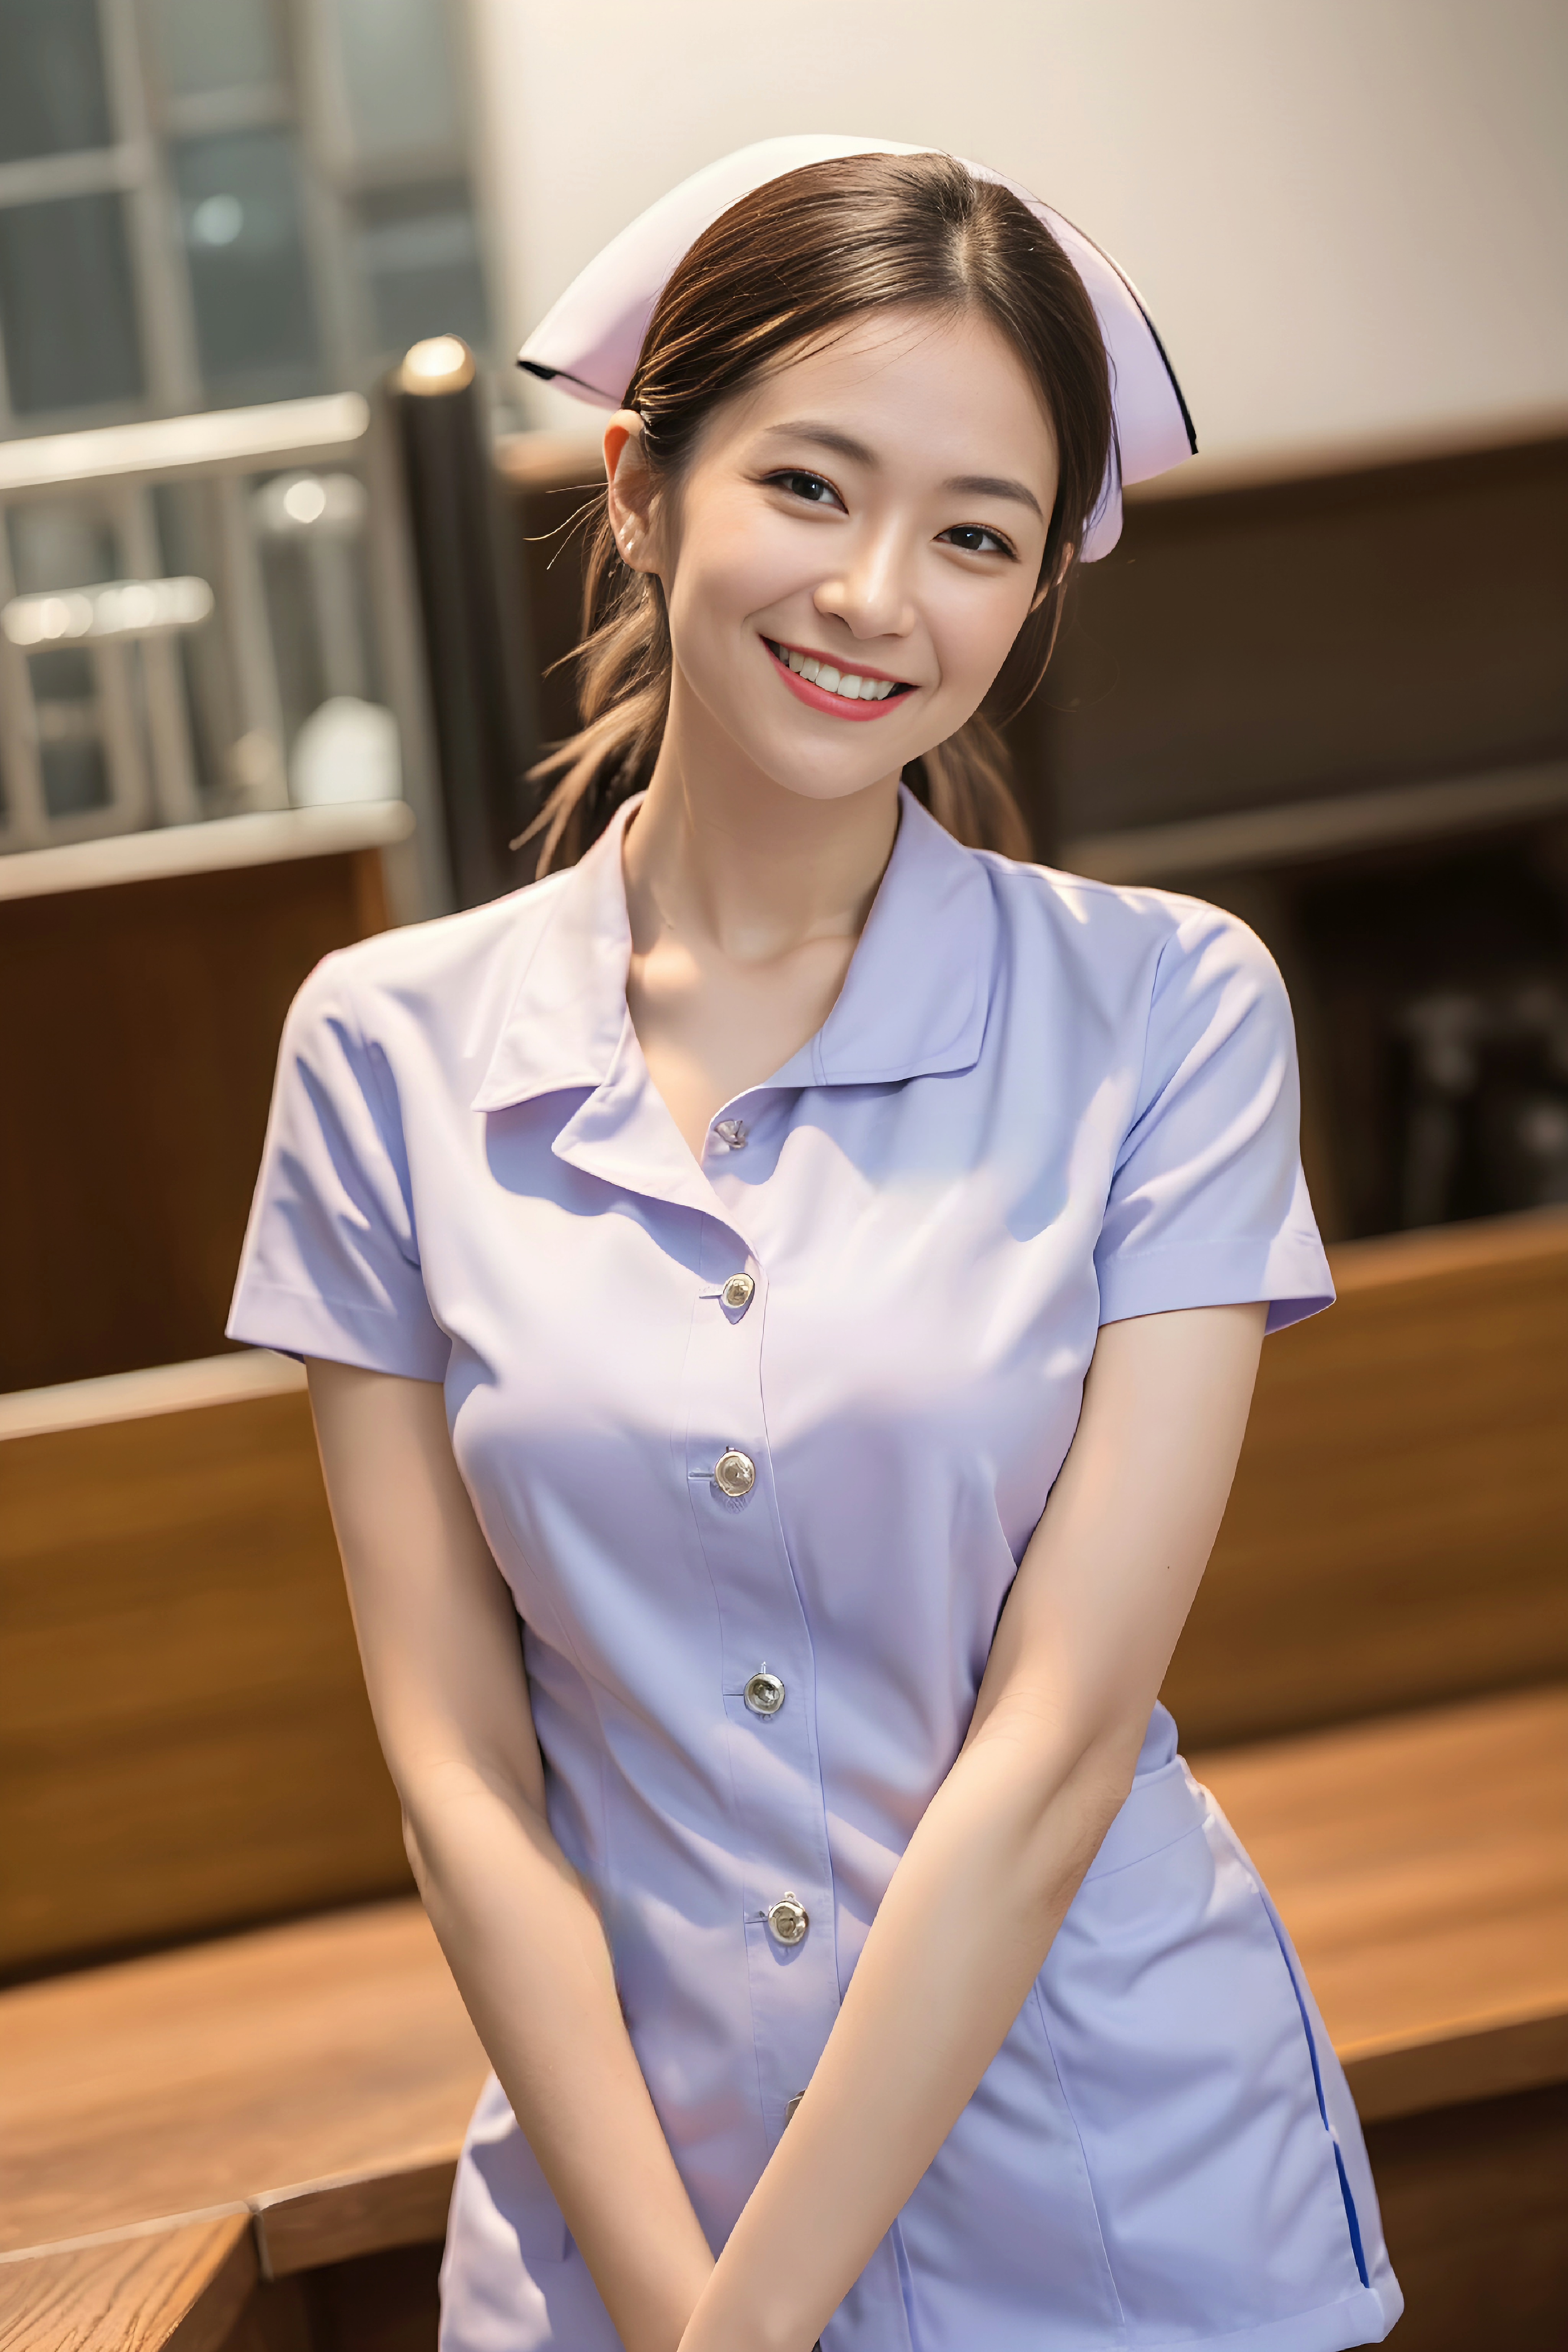 Thai Nurse  image by Linzhen